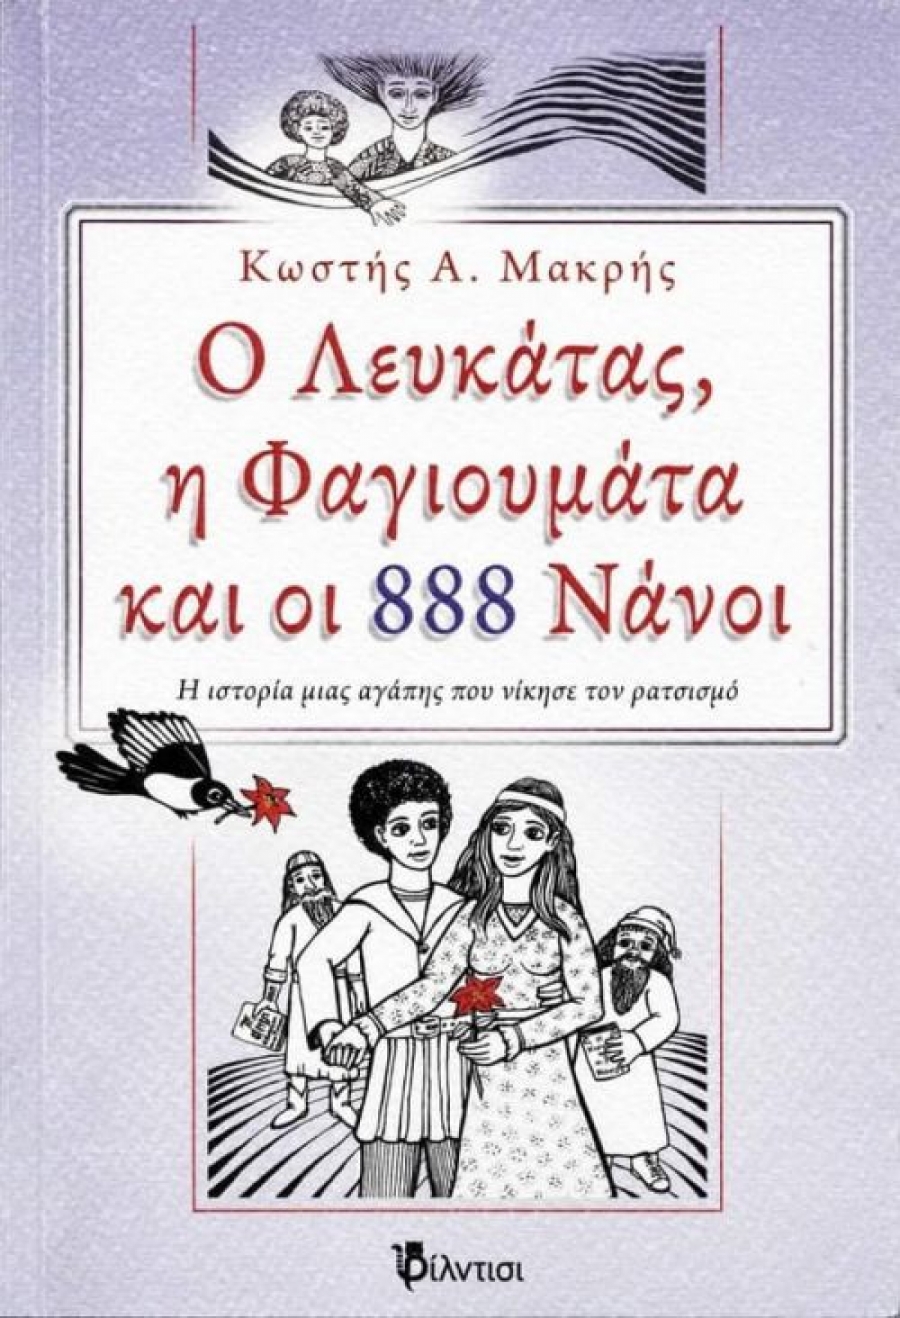 Βιβλίο: &quot;Ο Λευκάτας, η Φαγιουμάτα και οι 888 Νάνοι&quot; Η ιστορία μιας αγάπης που νίκησε το ρατσισμό του Κωστή Α. Μακρή Μυθιστόρημα